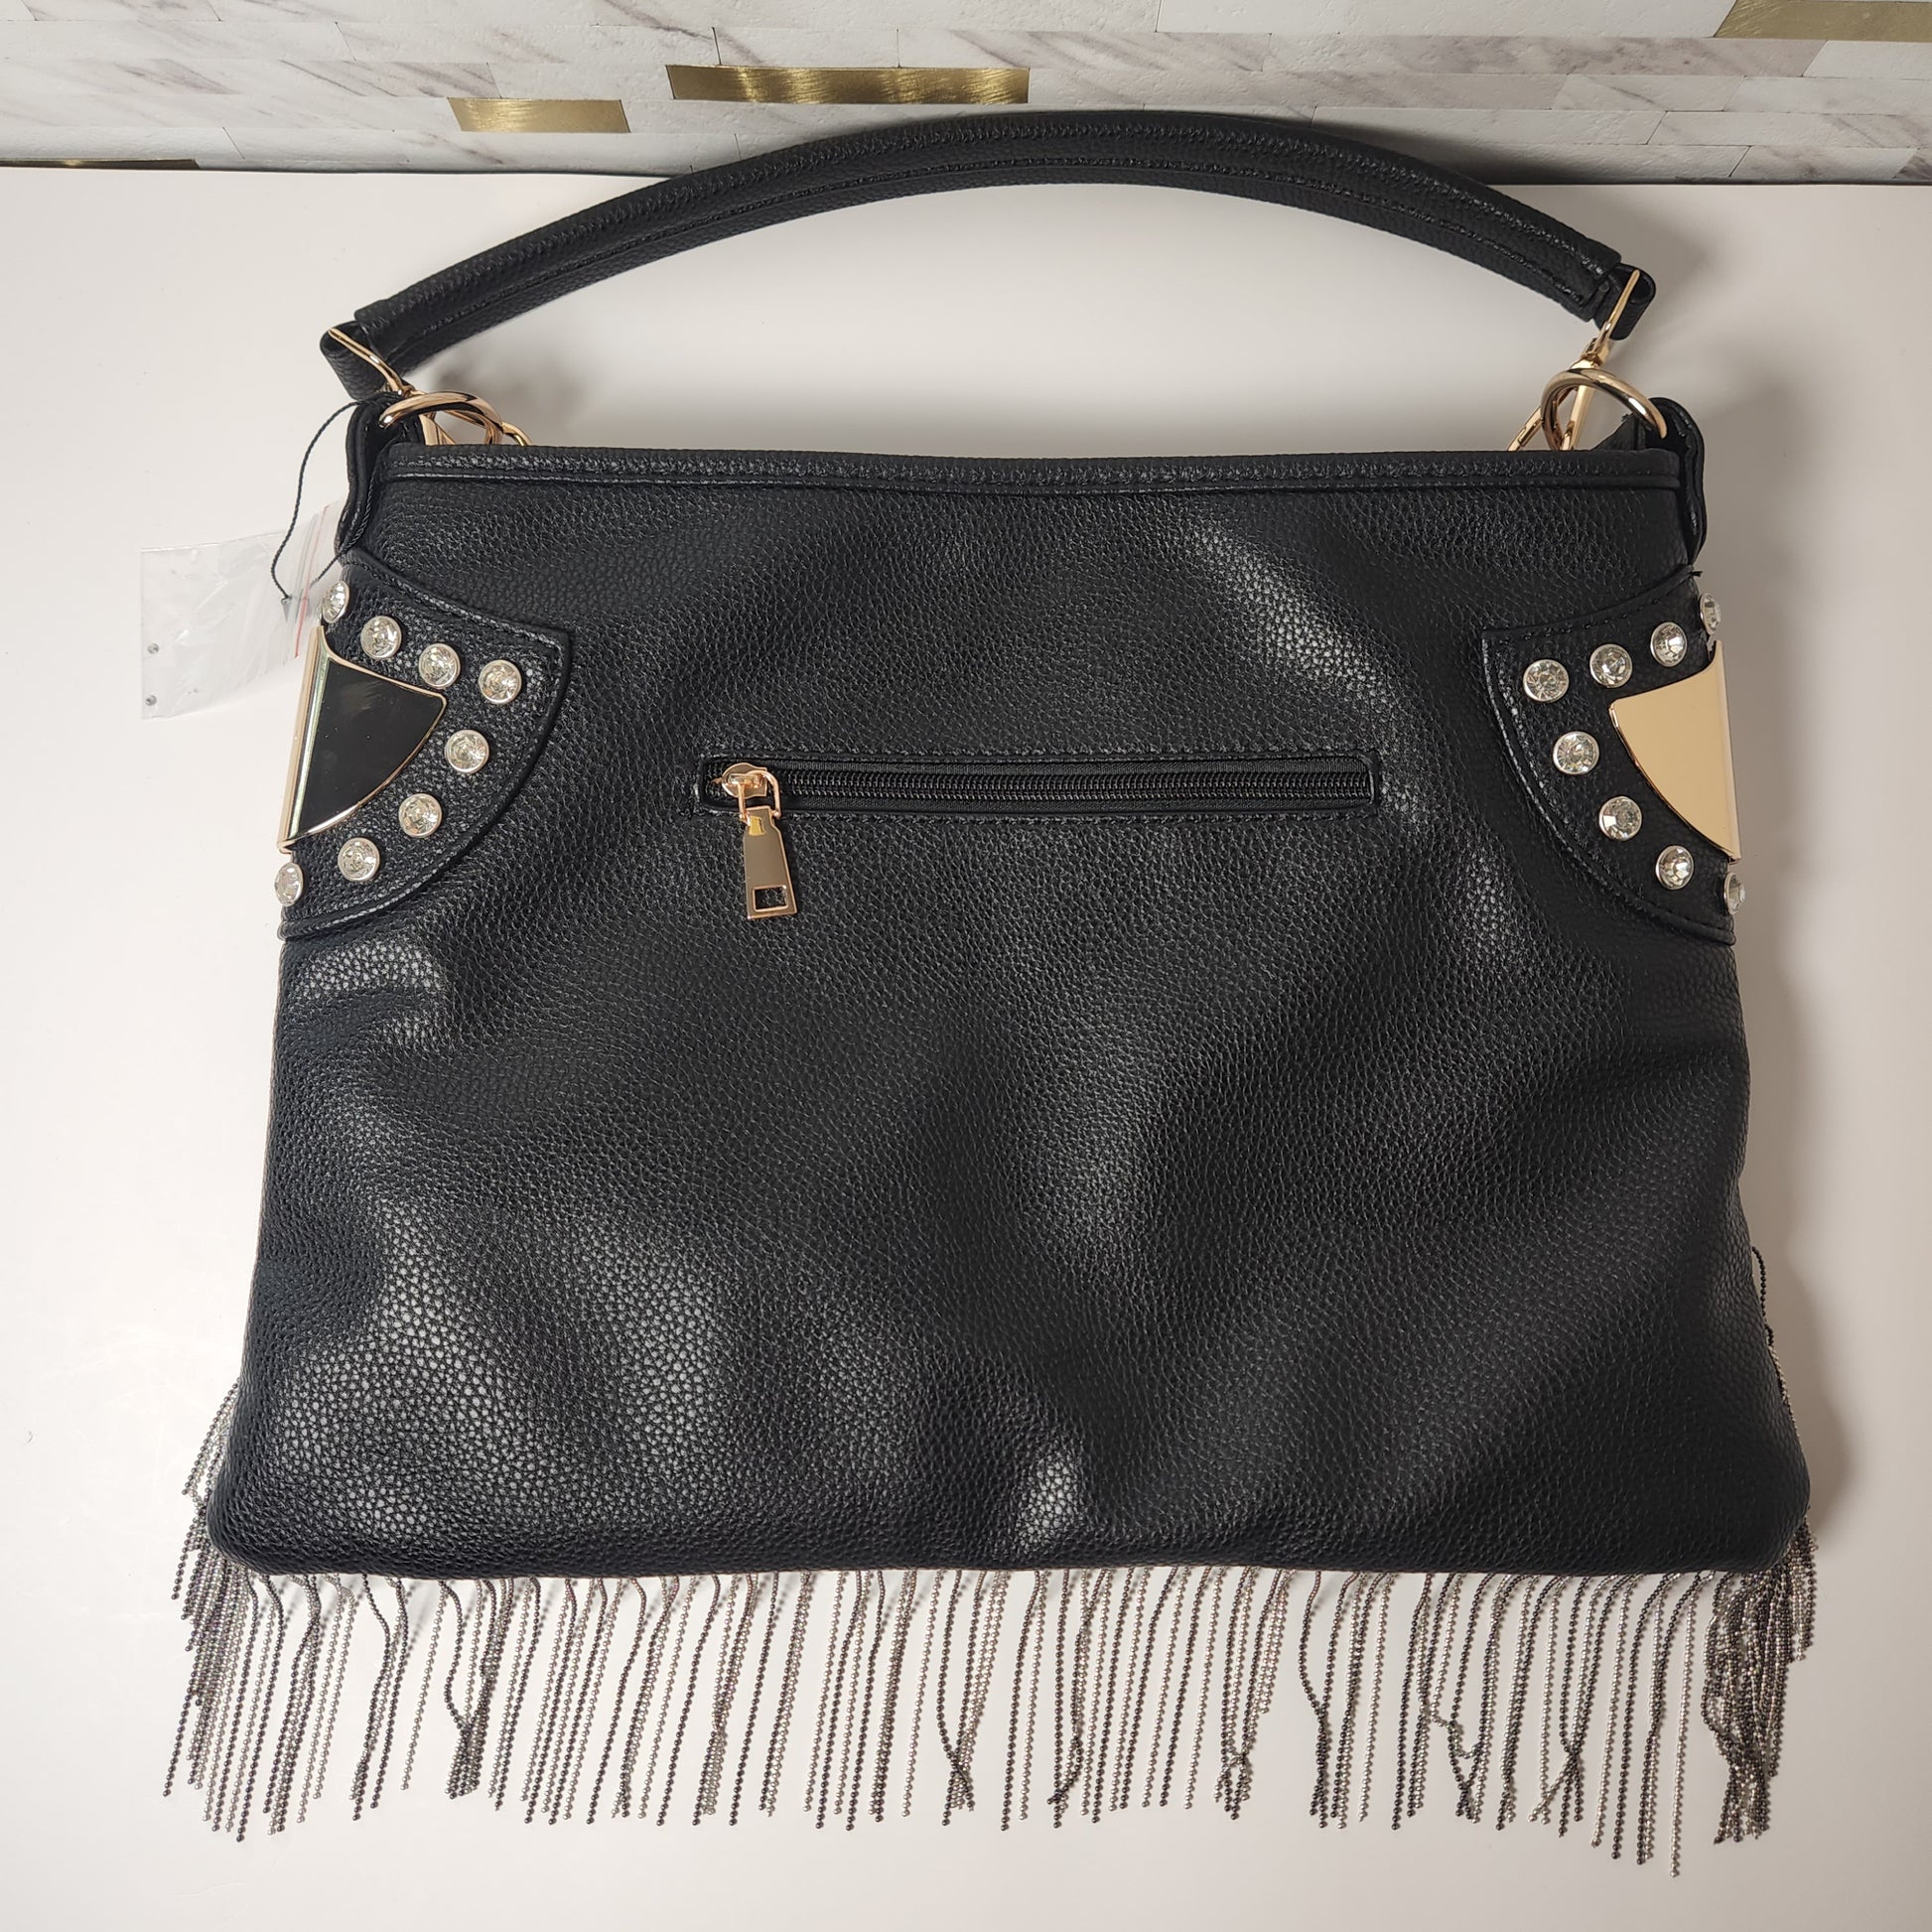 Bedazzled Fringe Leather Boho Bag